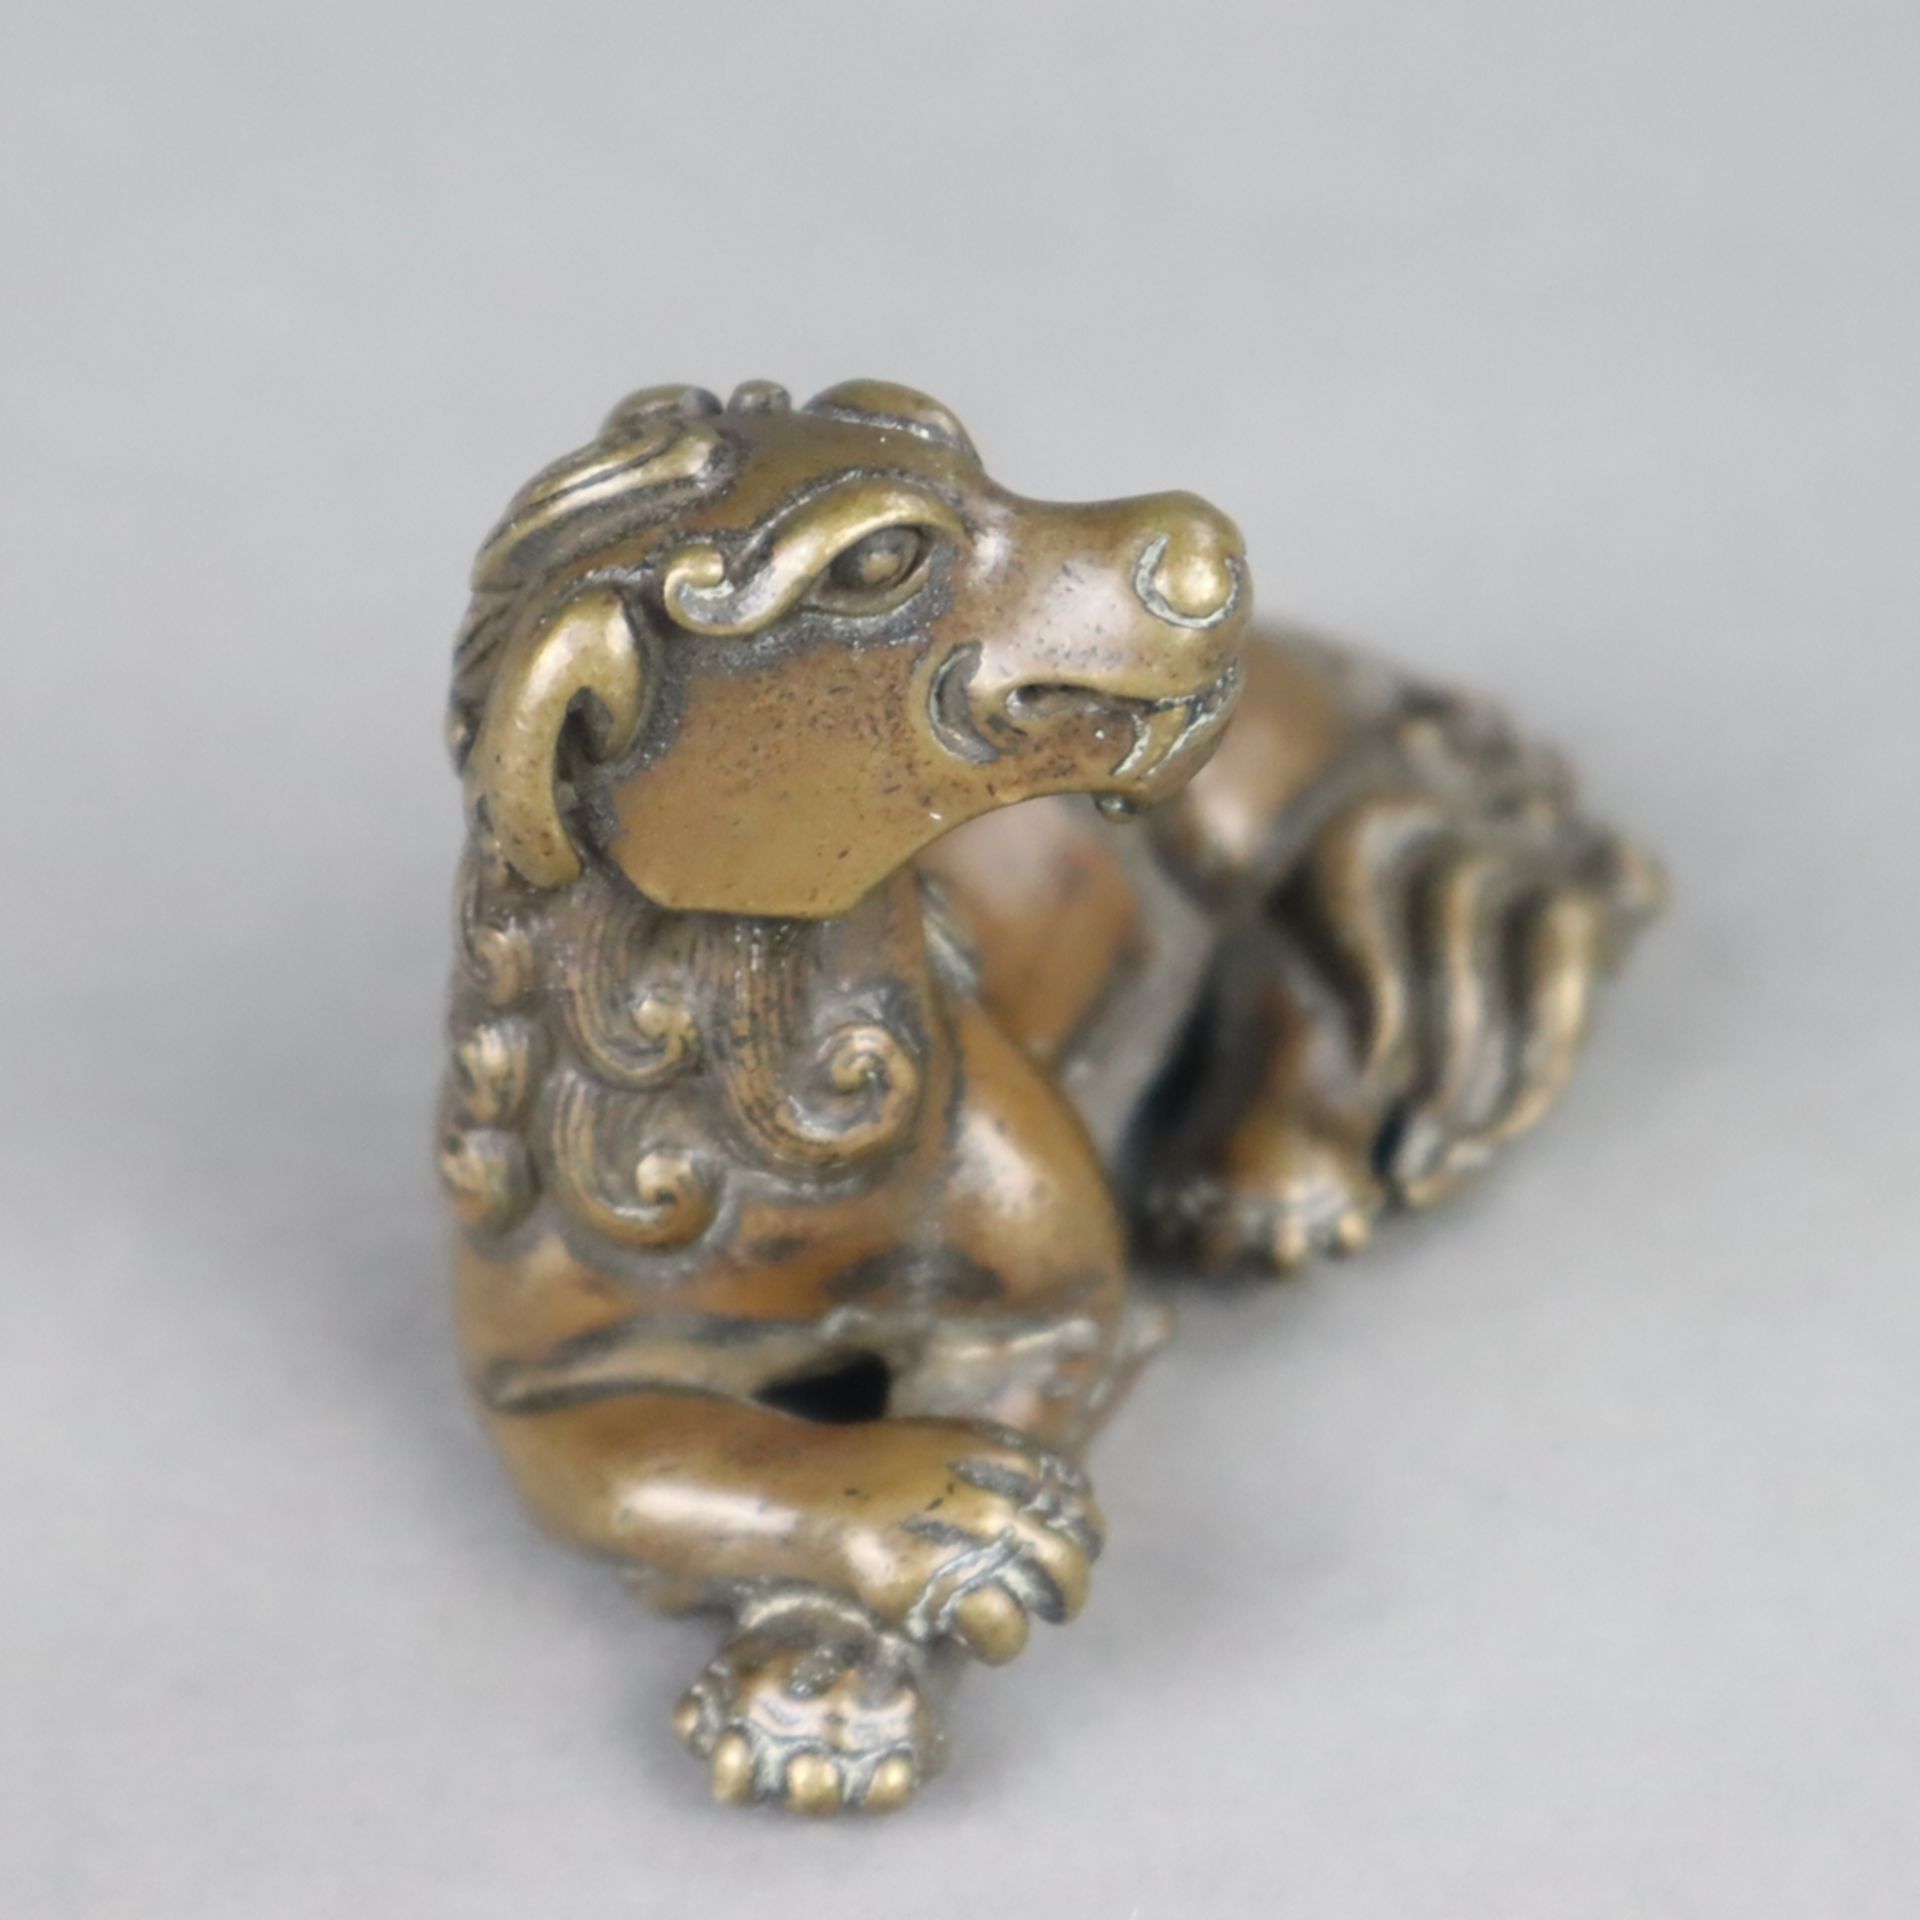 Fabelwesen "Qilin" / Paperweight - Bronze, braun patiniert, überaus detailreiche Ausführung in ents - Bild 2 aus 5